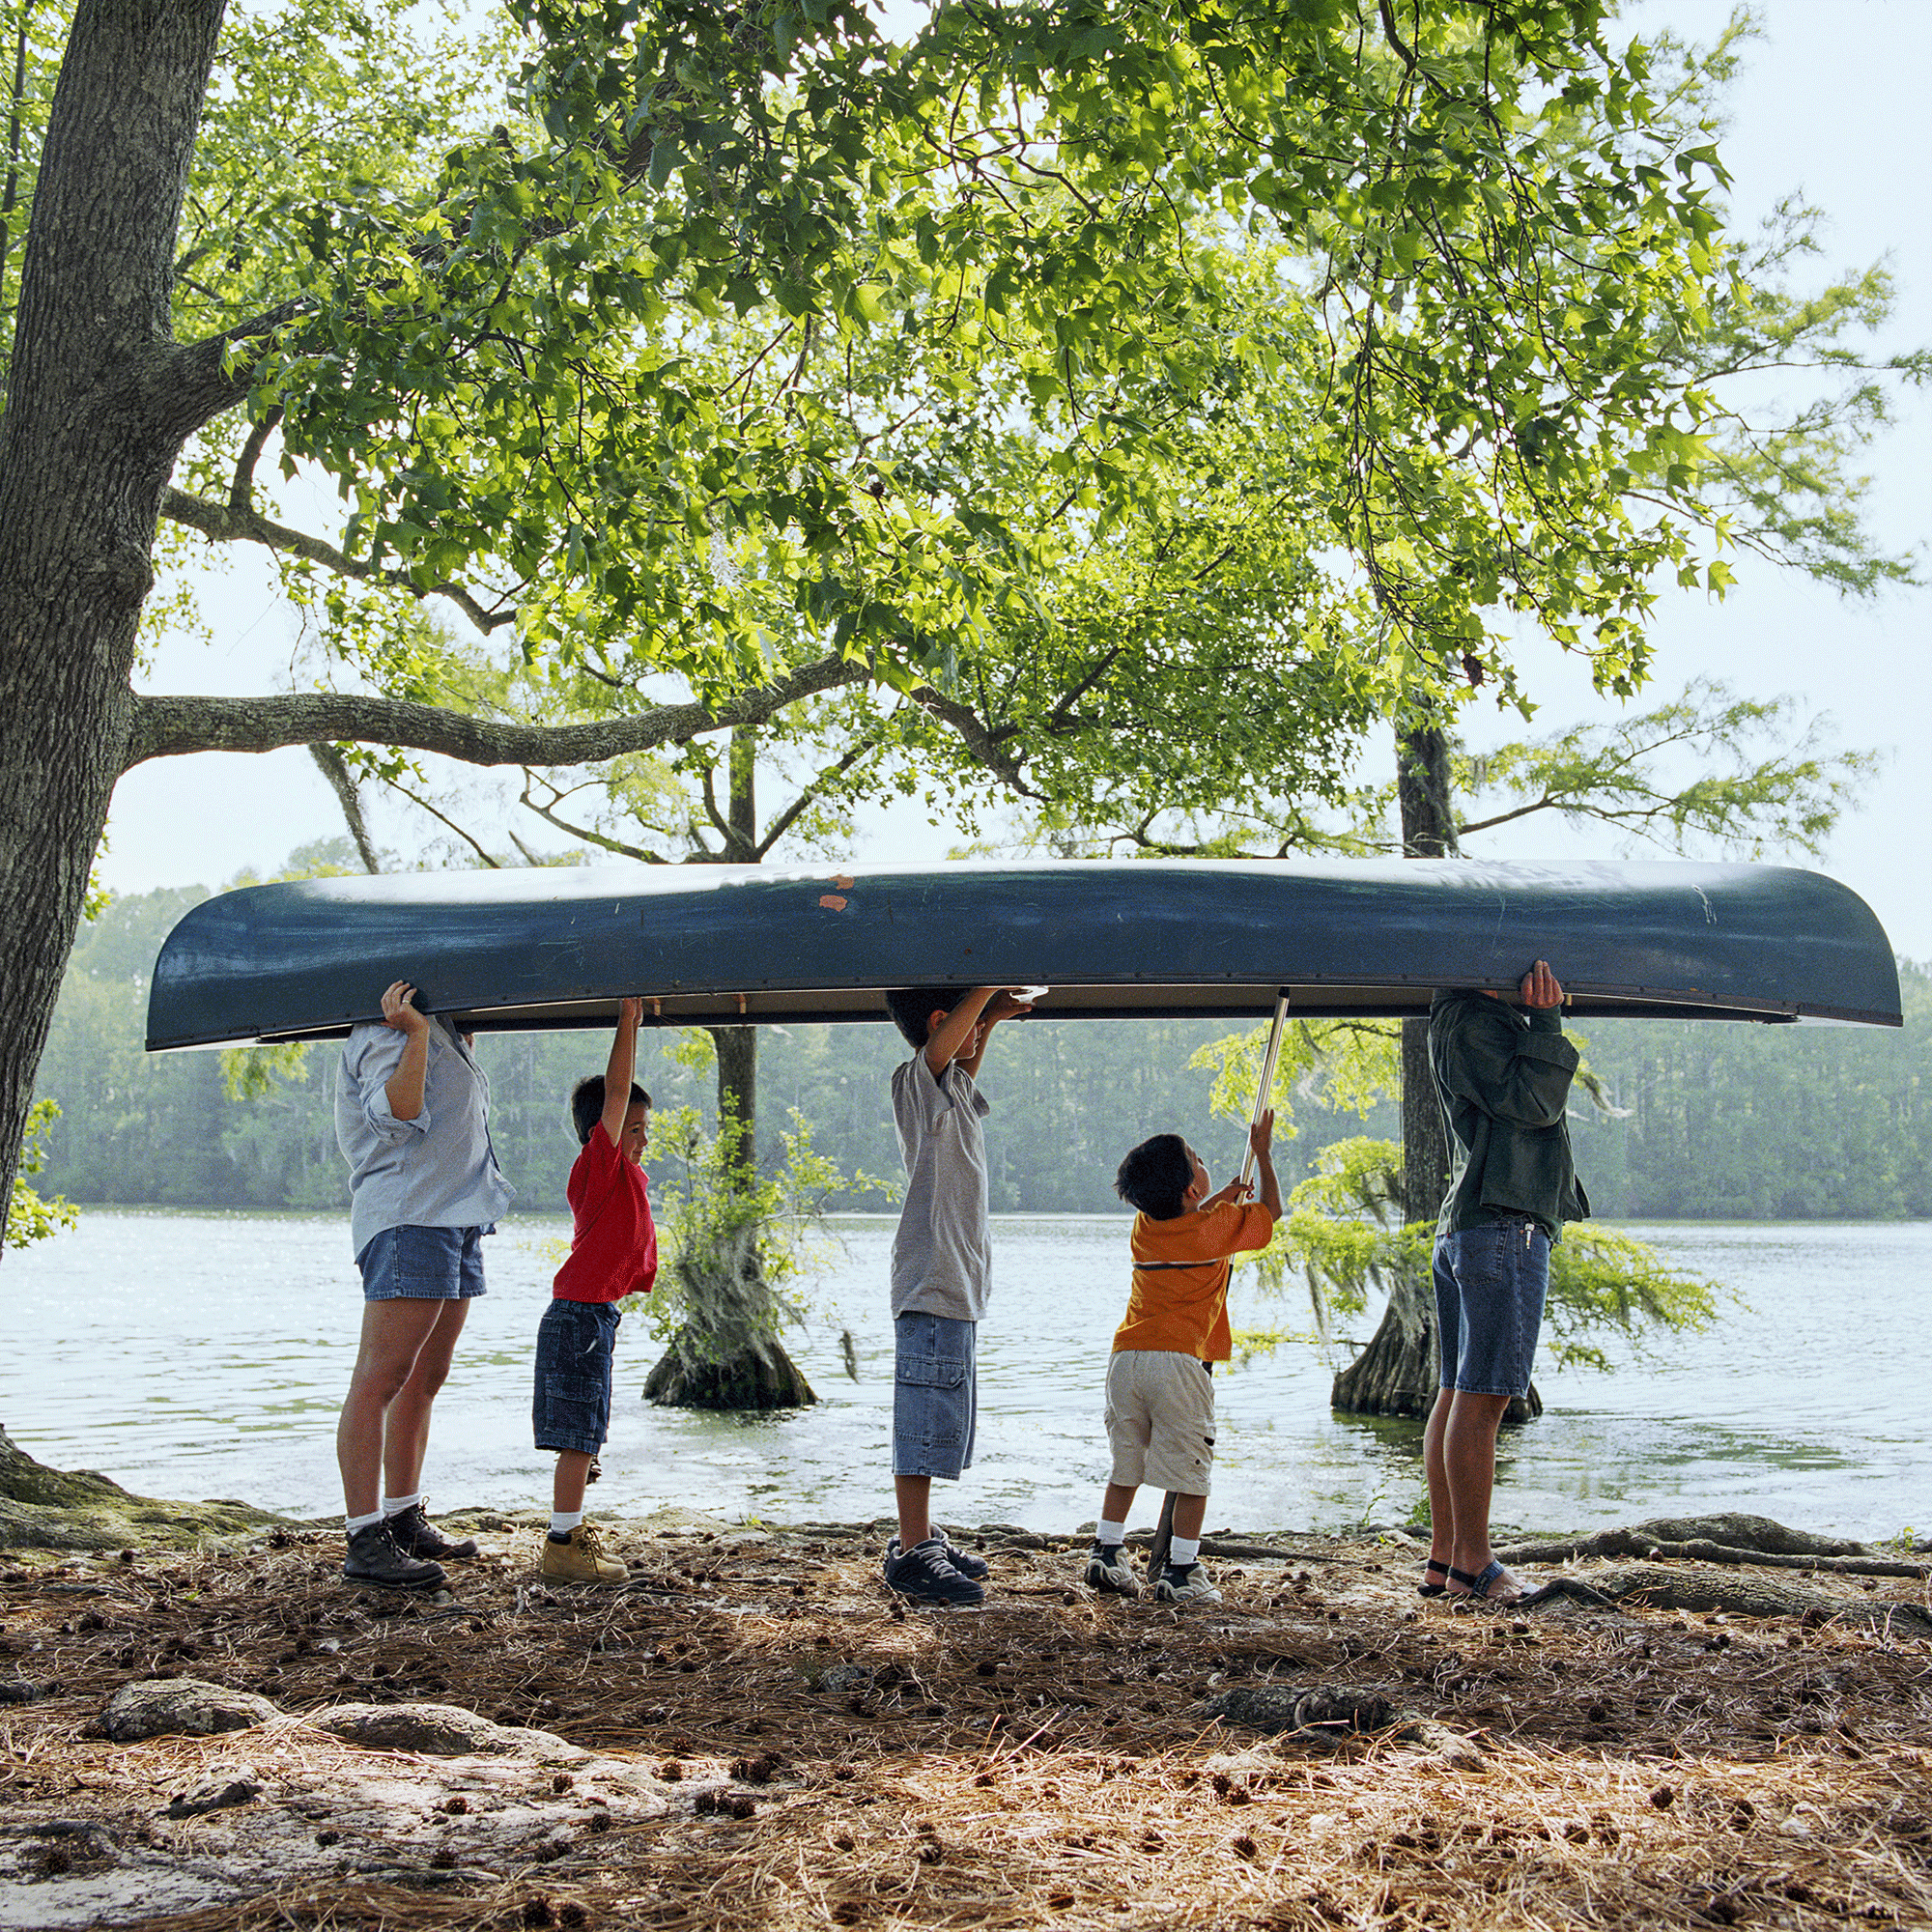 5-köpfige Familie am See, hält ein Kanu umgekehrt über ihren Köpfen